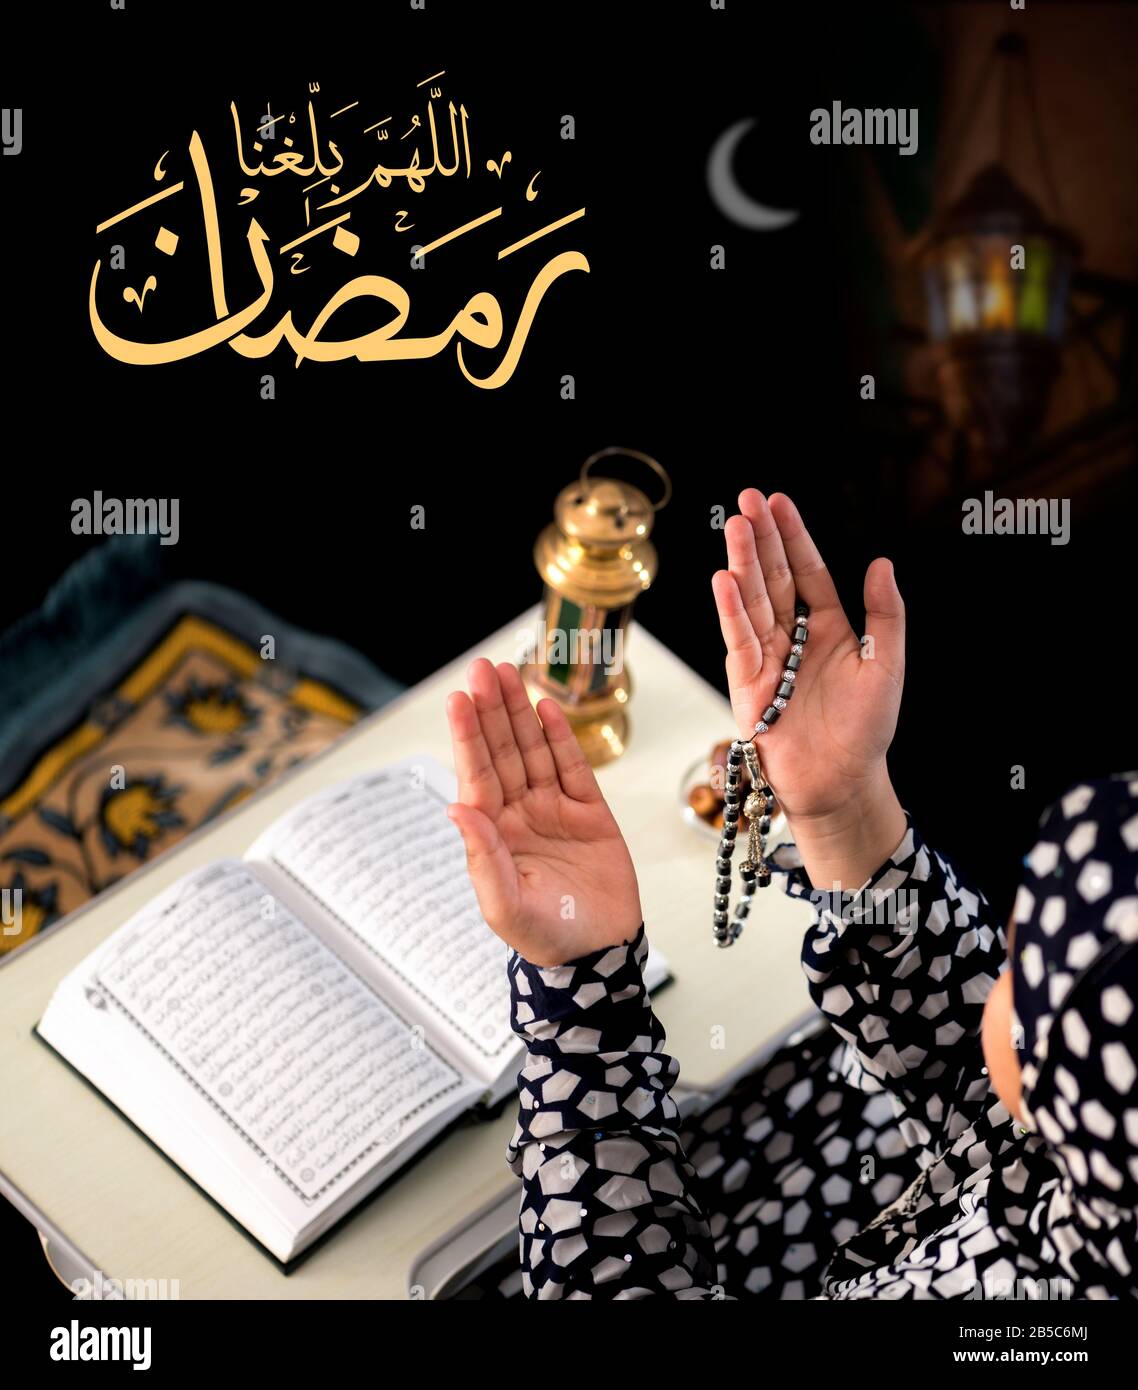 Ragazza musulmana Che Alza Le Mani per la preghiera su sfondo nero, con il testo arabo di Calligraphy Che Dice 'Dio, aiutaci a raggiungere il Ramadan' Foto Stock